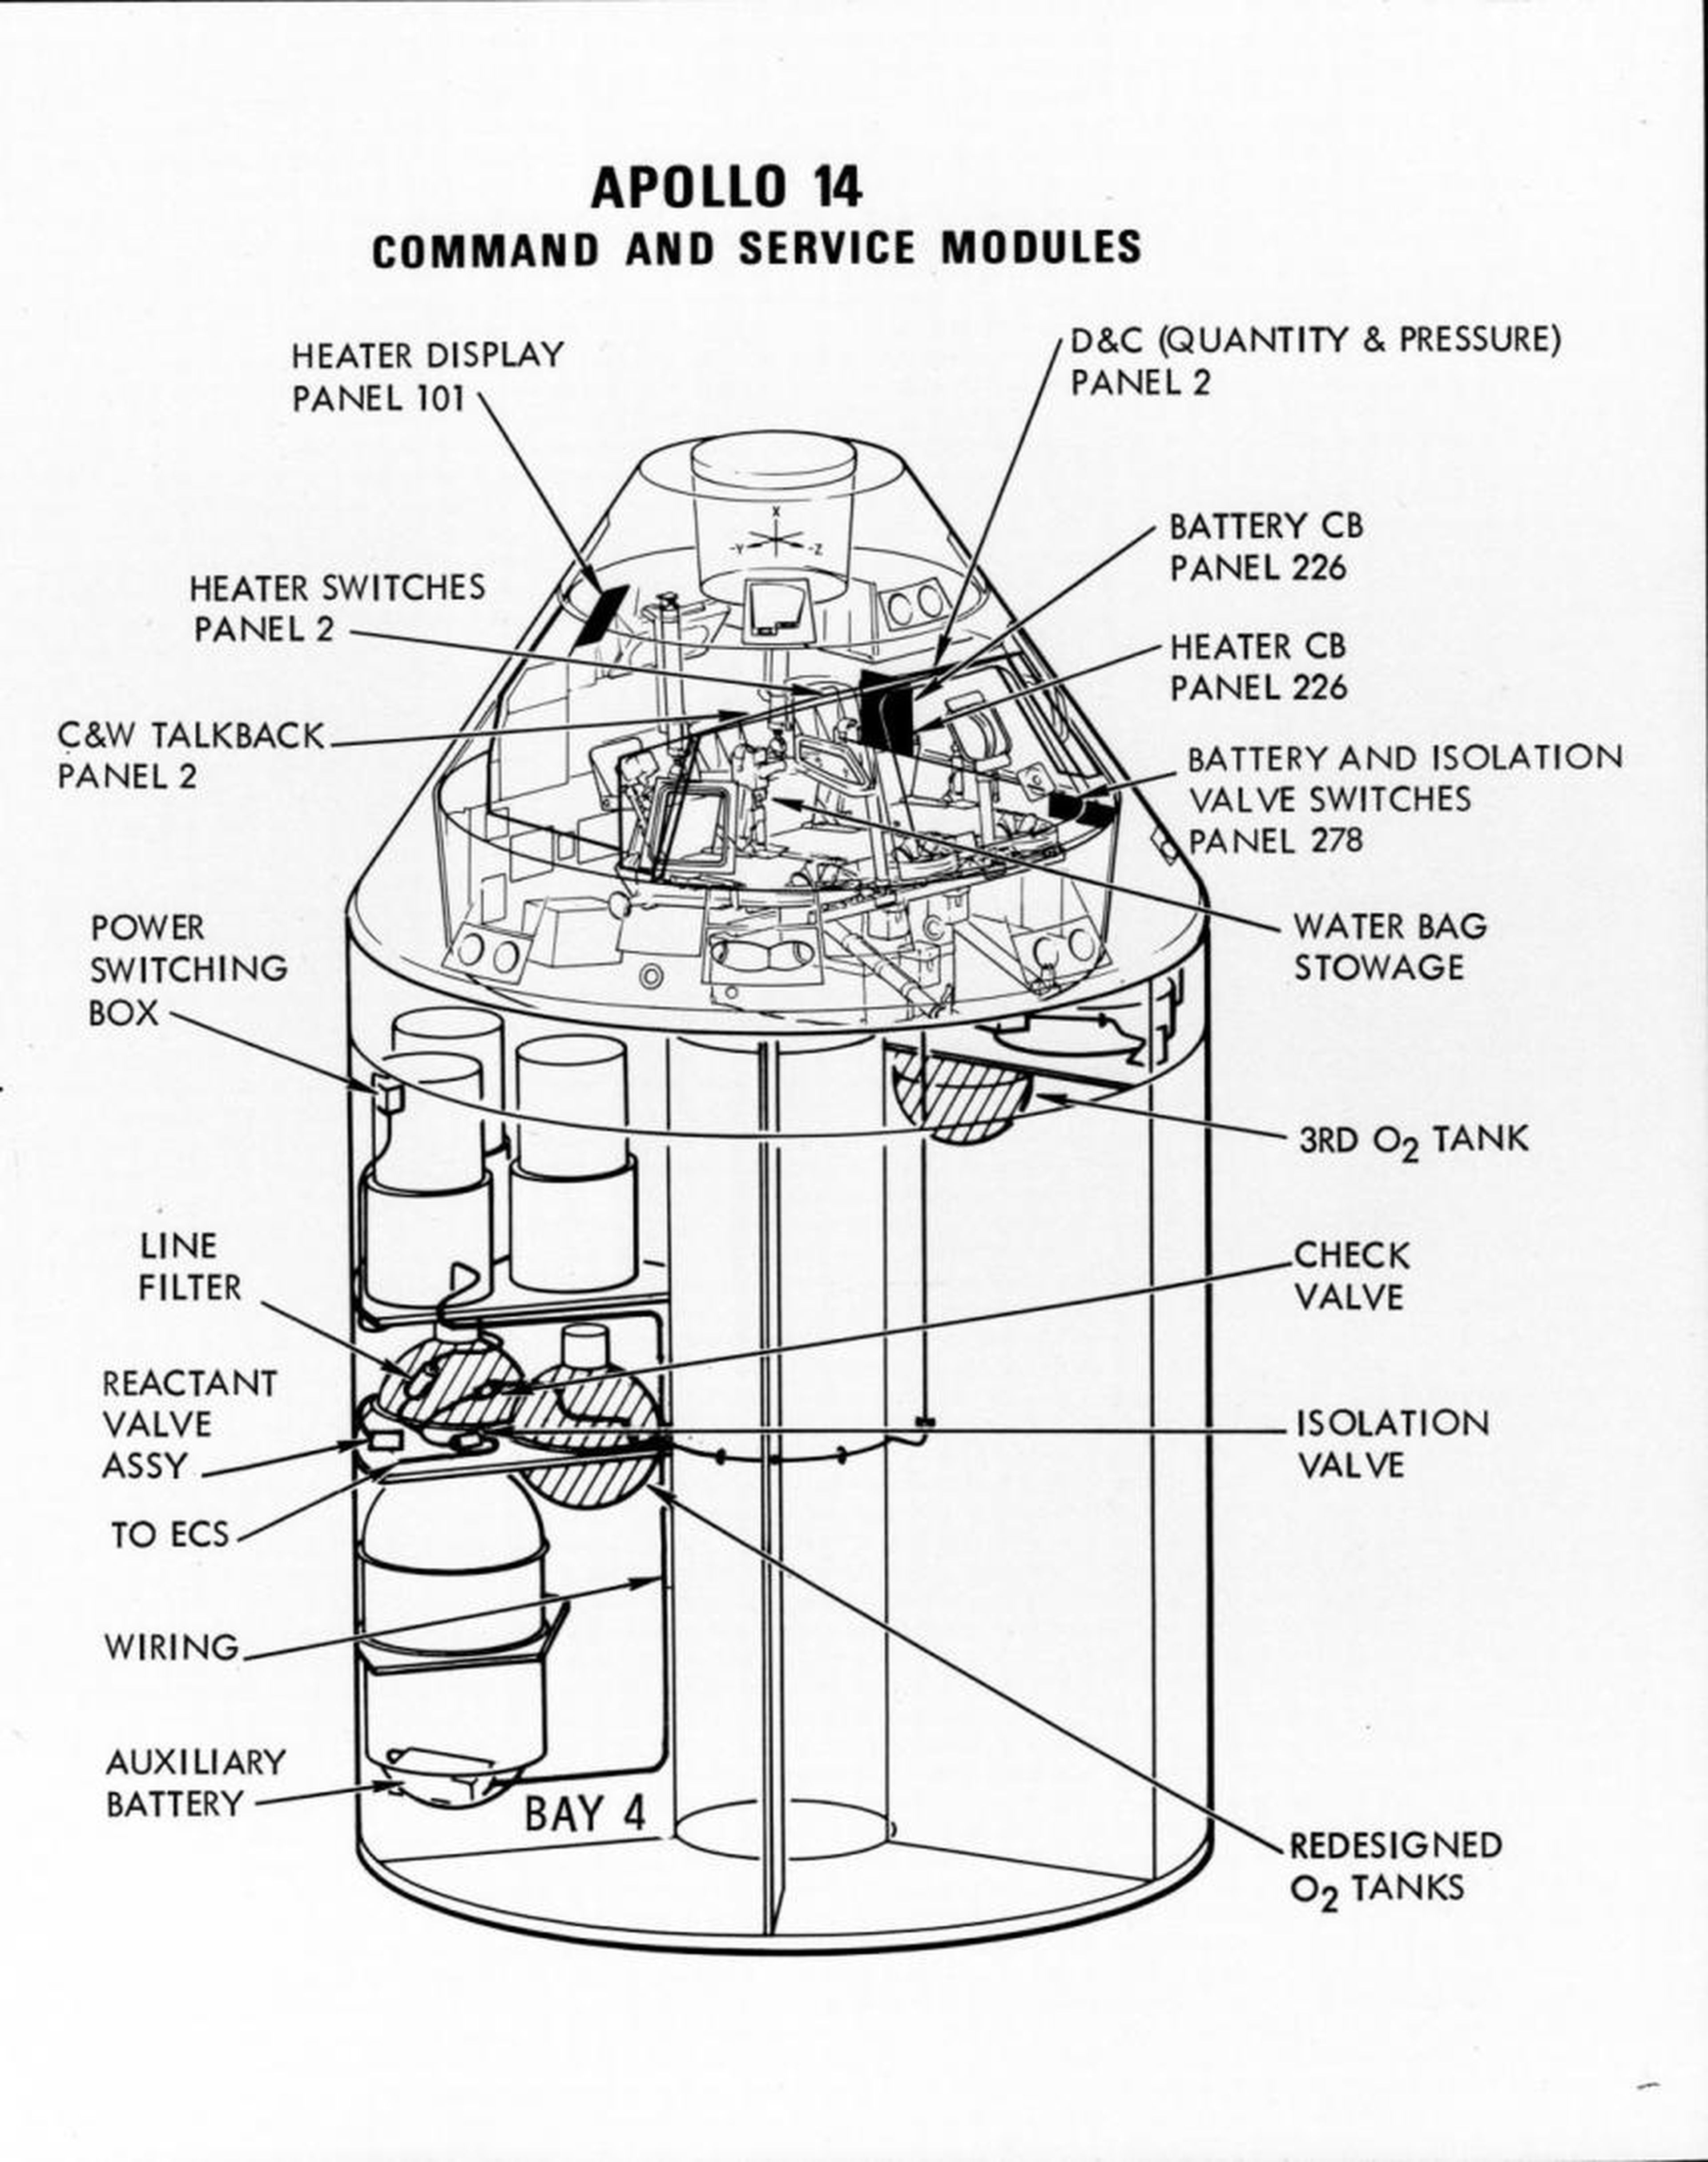 Ilustración de los nuevos módulos de mando y servicio, tras el desastre del Apolo 13.